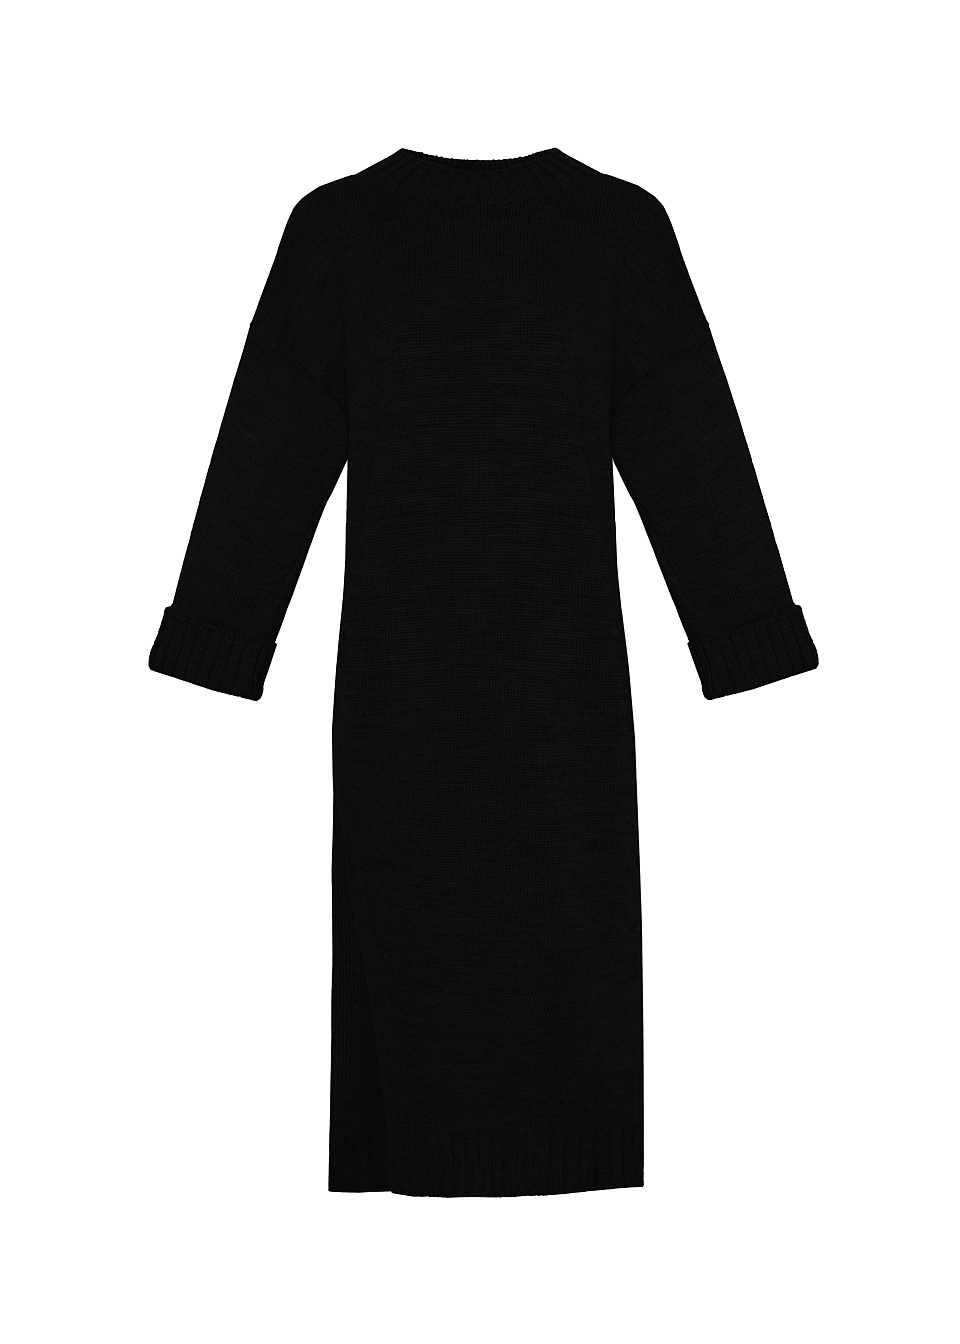 Женское платье Stimma Равира, цвет - черный